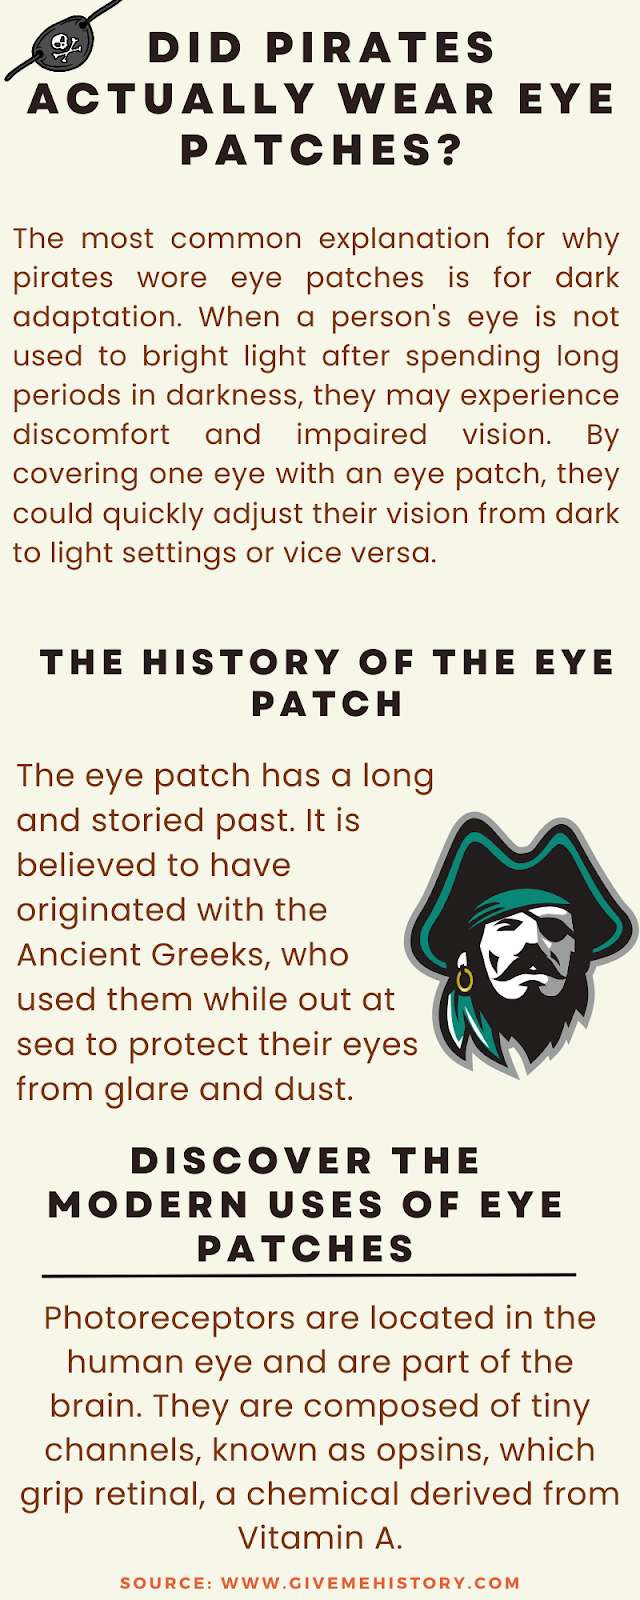 Os piratas usavam mesmo tapa-olhos?